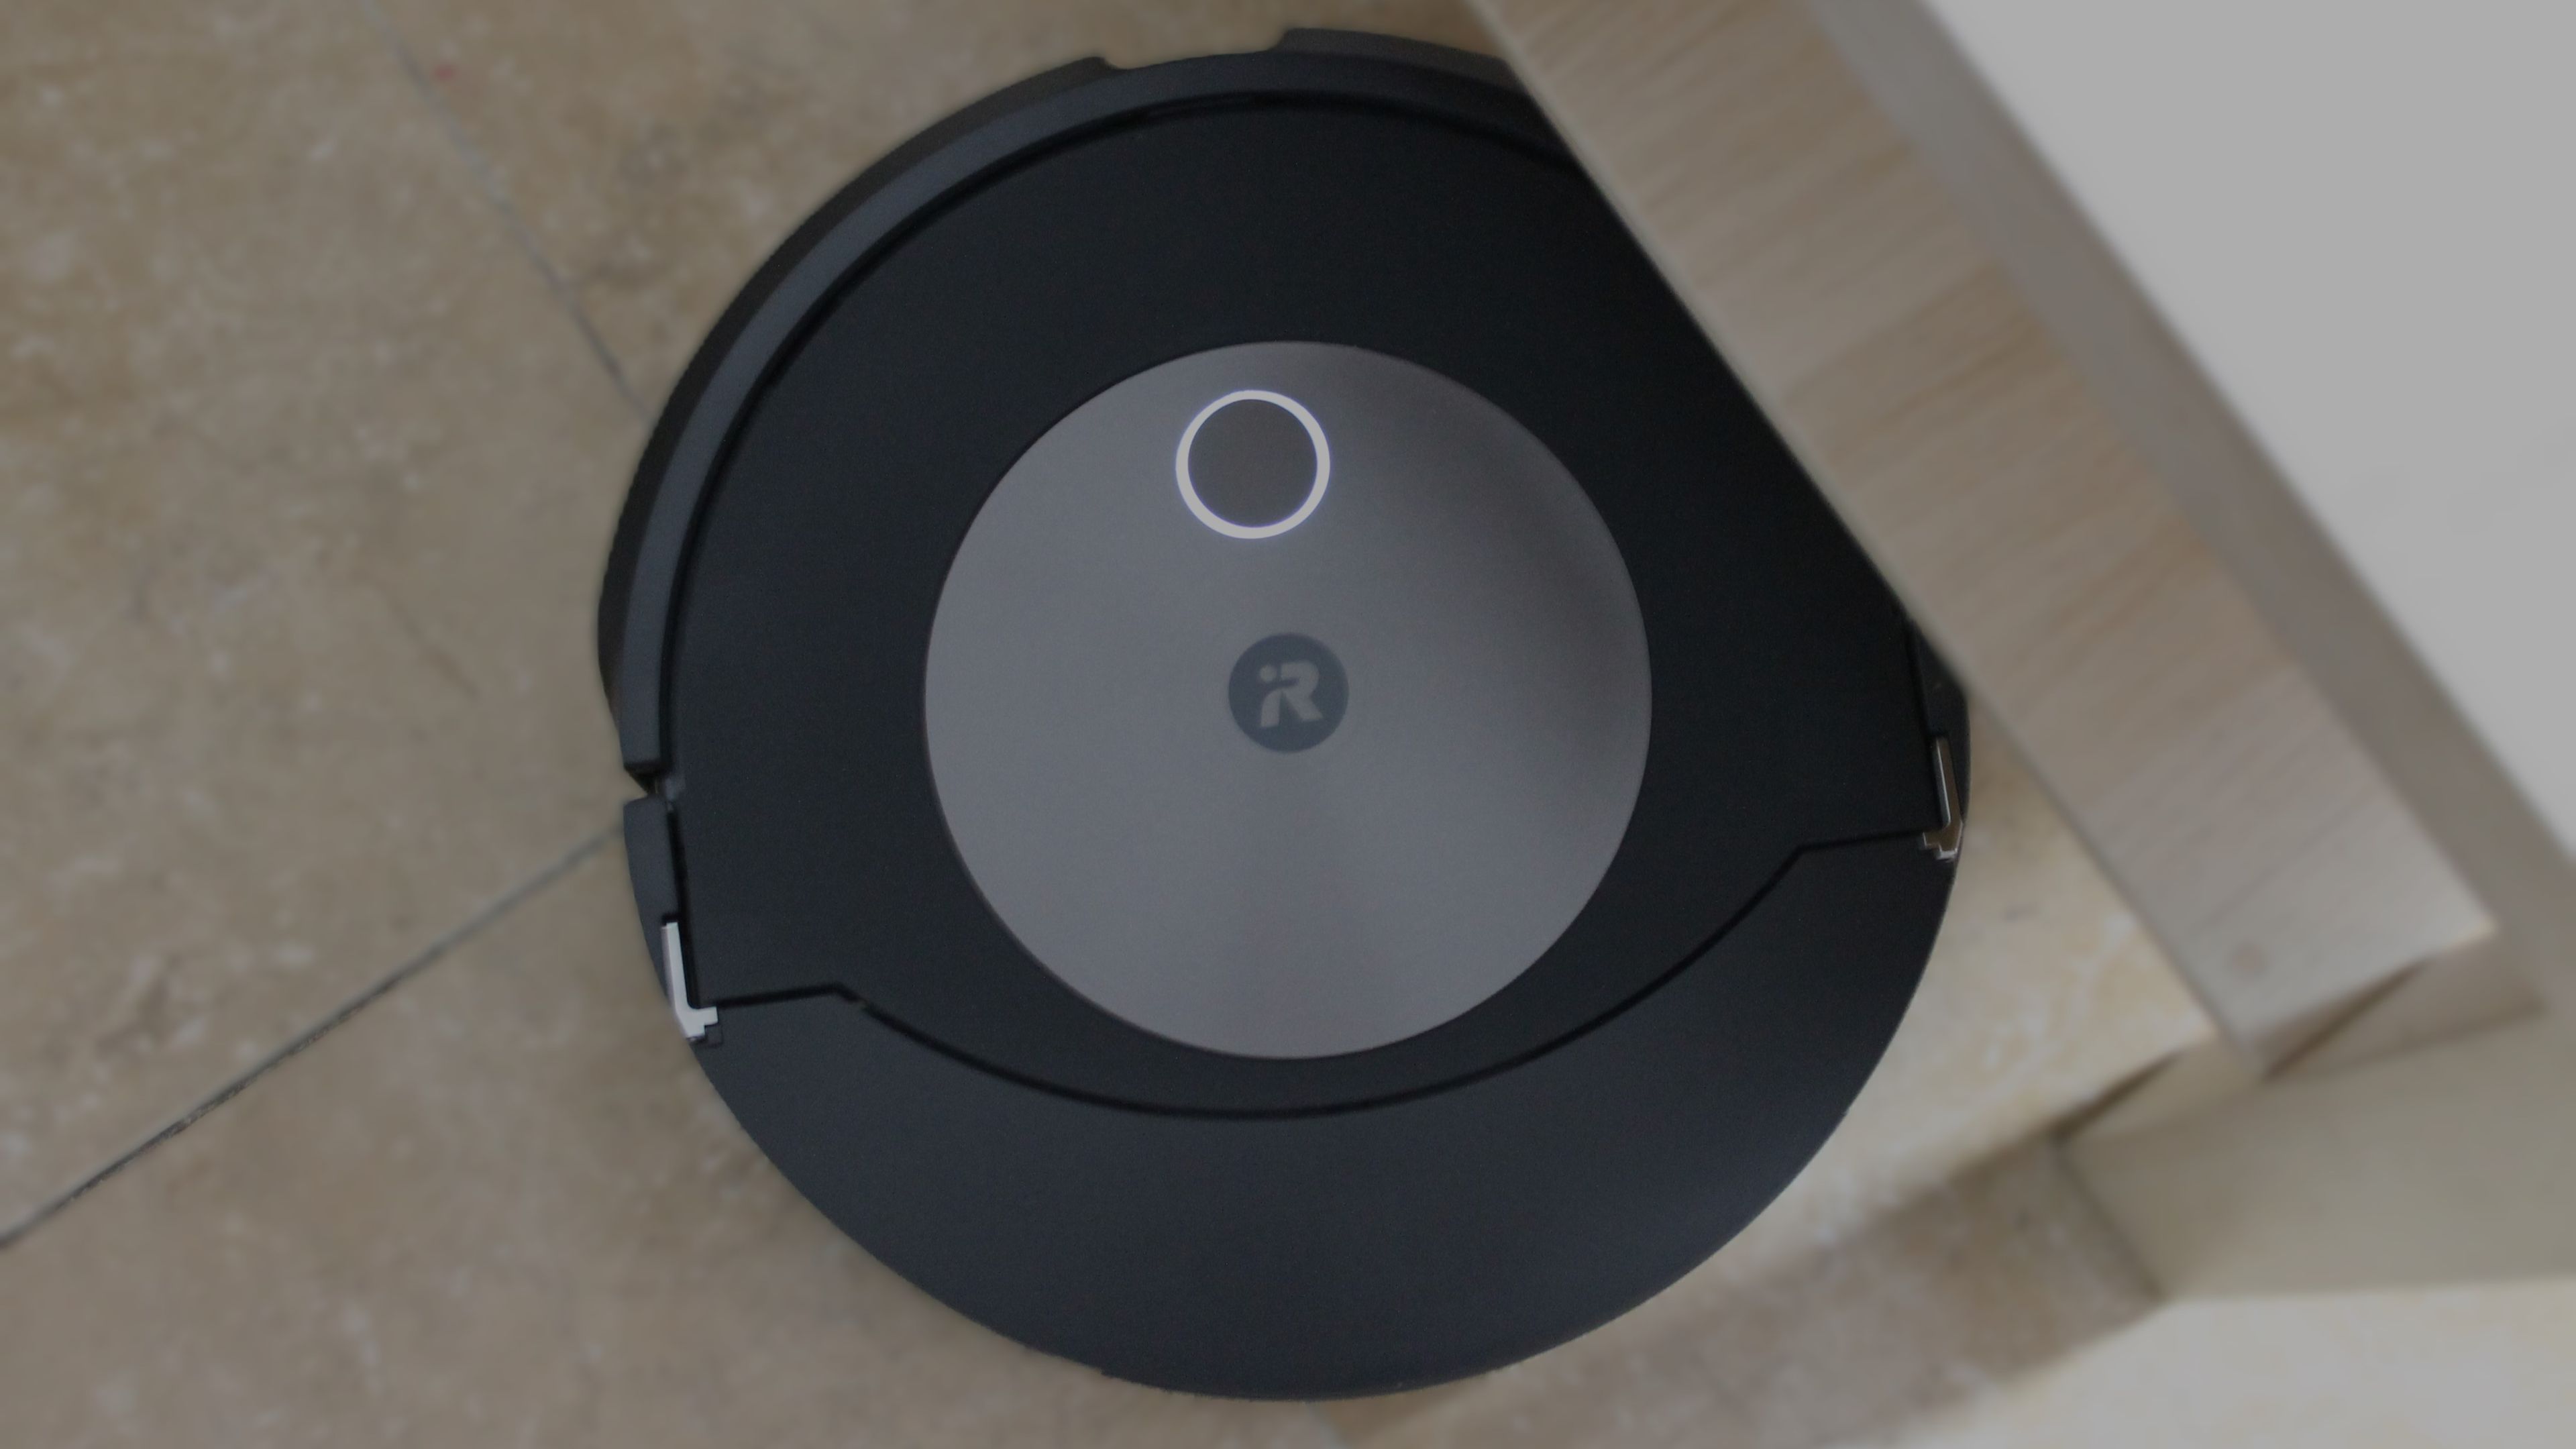 iRobot Roomba Combo j7+, análisis: review características, precio